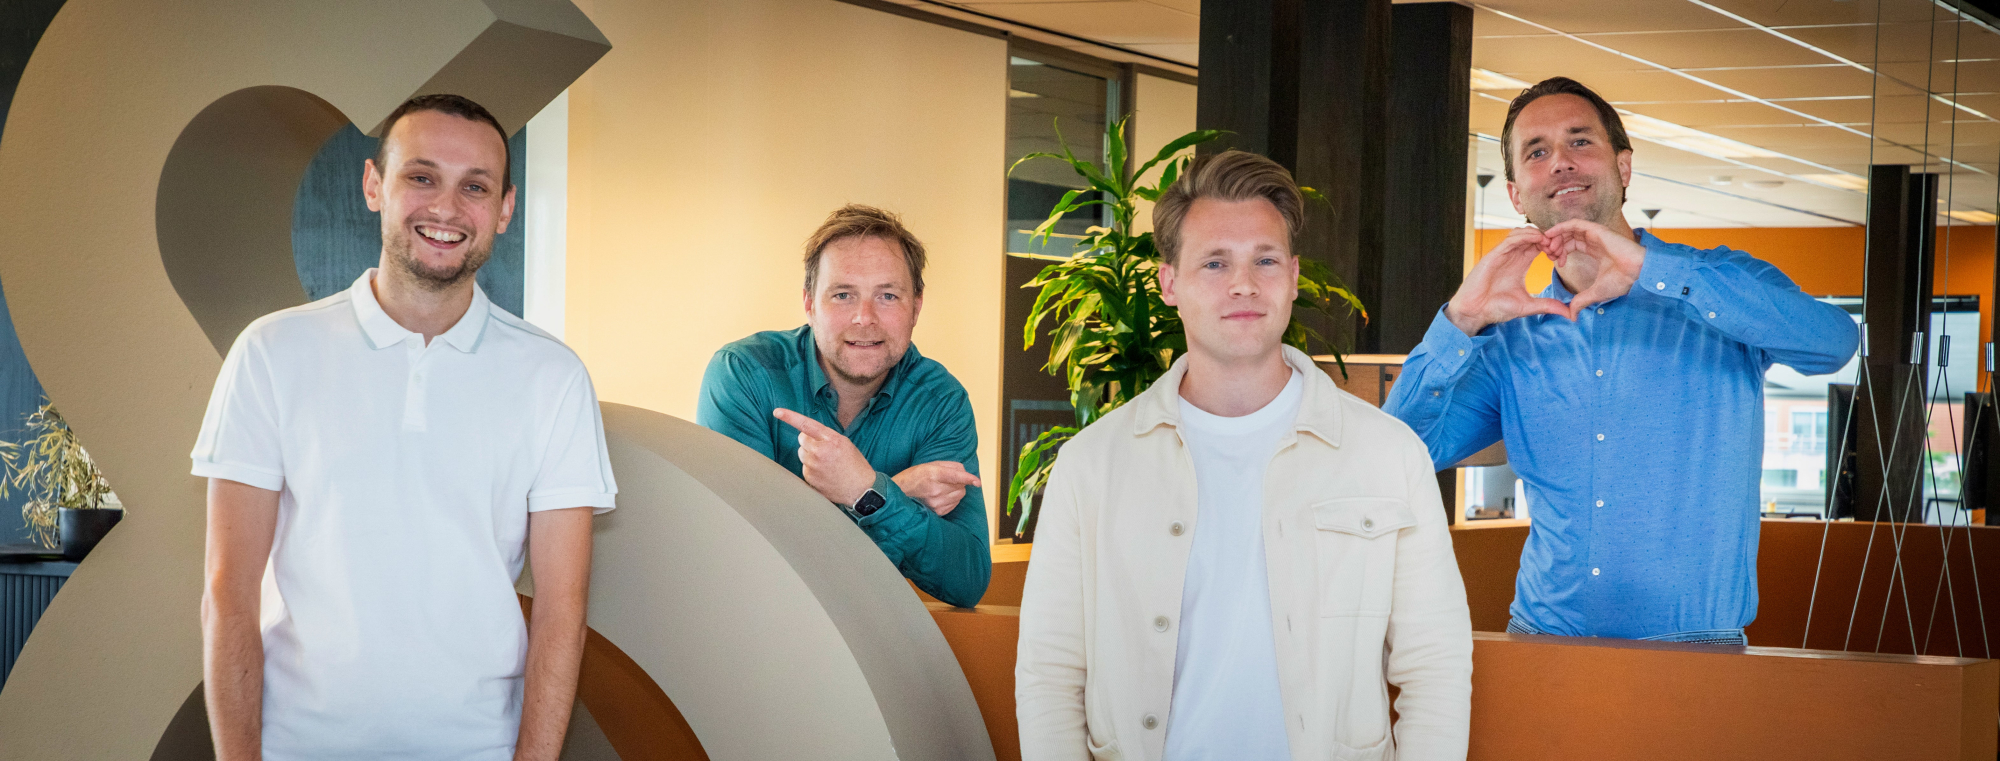 De directieleden van Nerds & Company staan naast elkaar op kantoor. Van links naar rechts: Johan, Thijs, Timar en Tim.